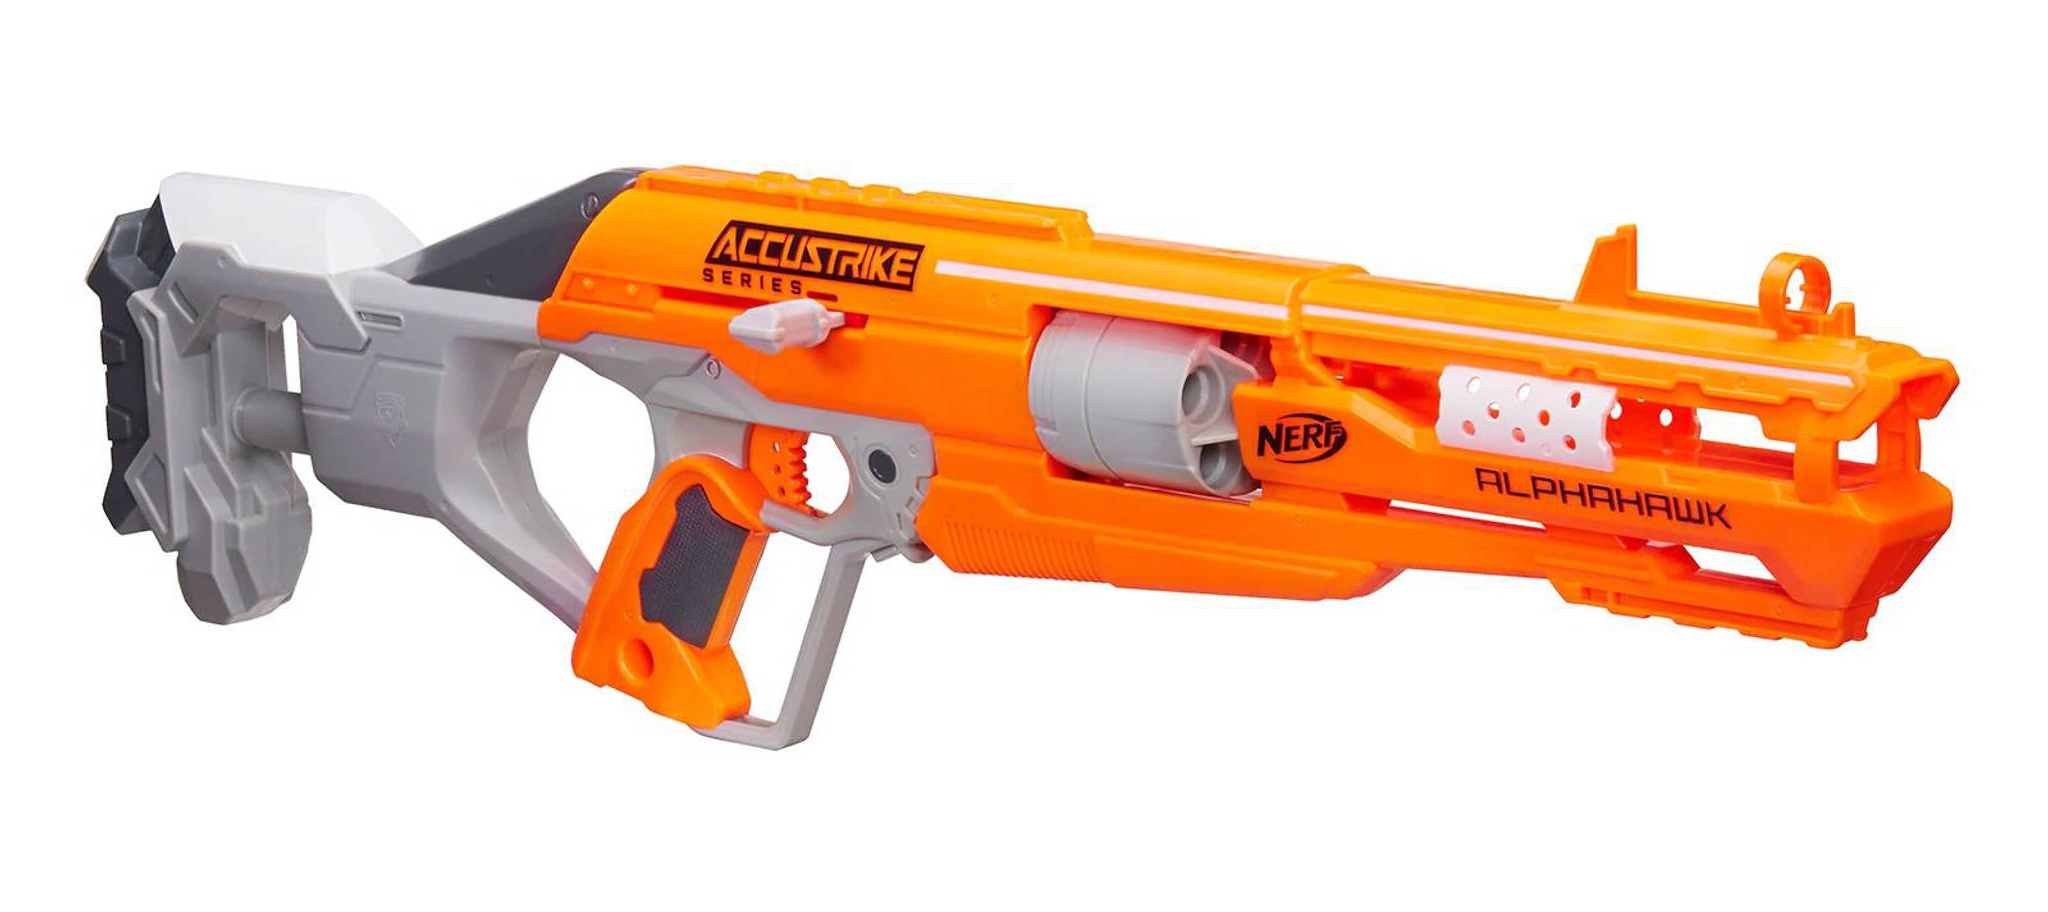 Nerf Accustrike Alphahawk : notre test et avis complet sur ce fusil -  Passion Nerf